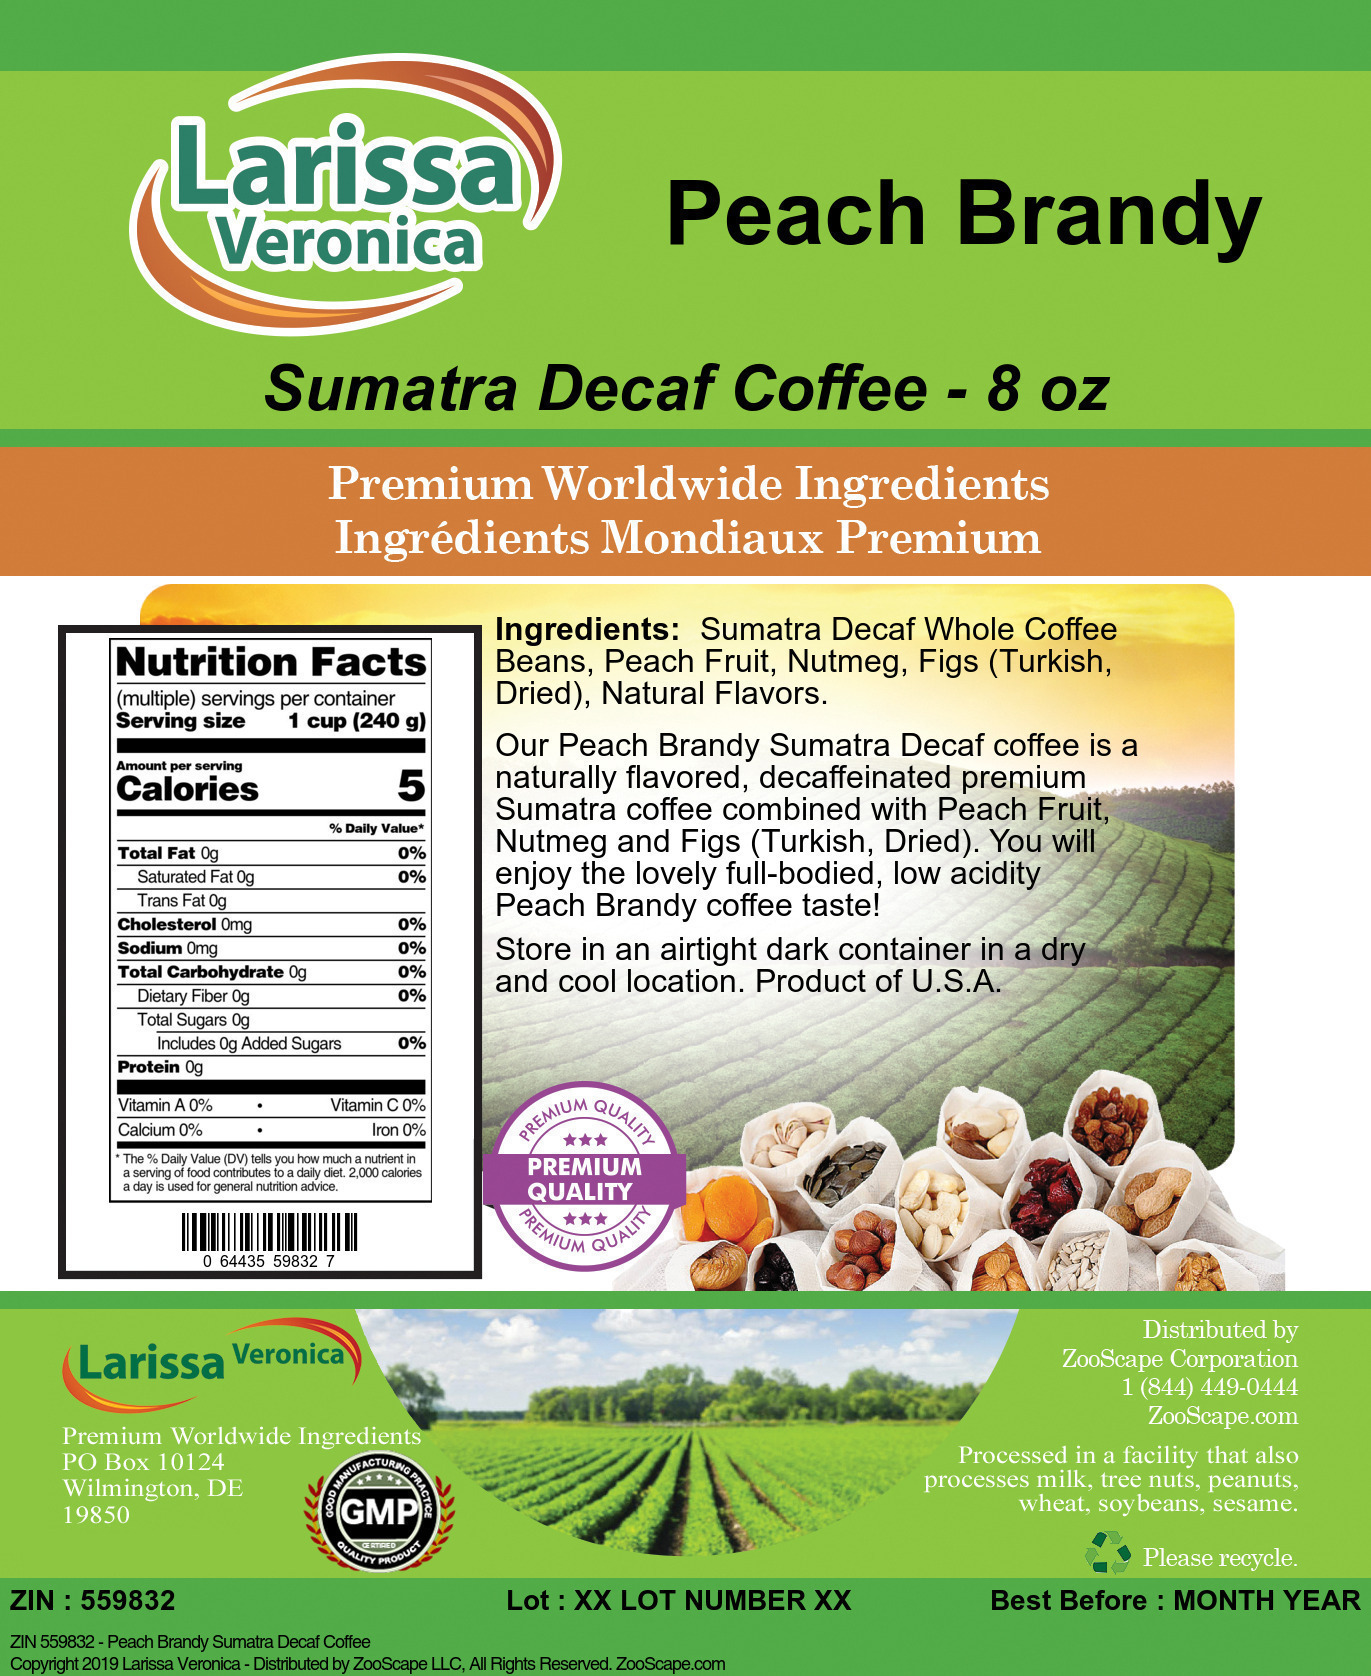 Peach Brandy Sumatra Decaf Coffee - Label